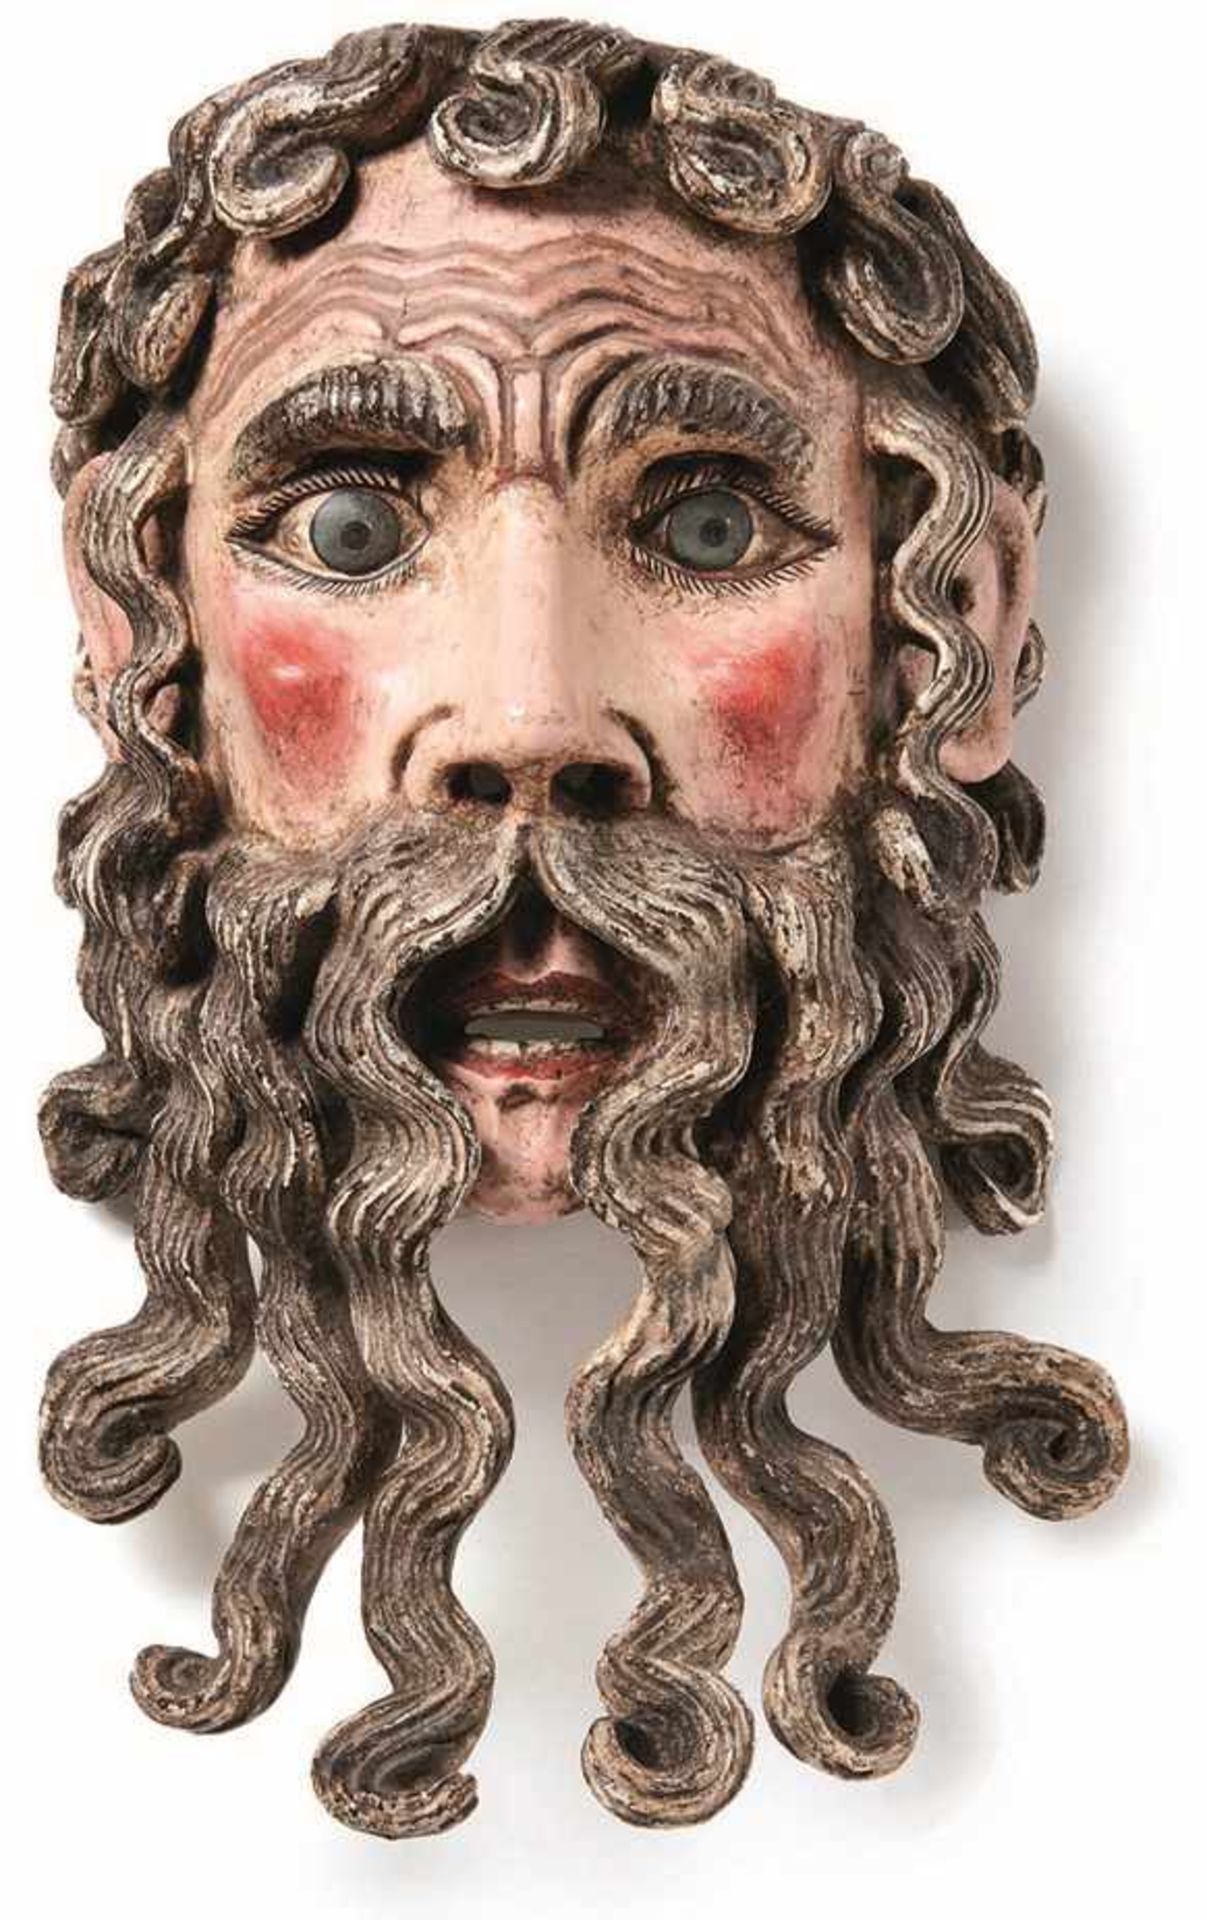 Theatermaske des Göttervaters Zeus18. Jh.Ausdrucksstark gearbeitetes Gesicht mit langem lockigem